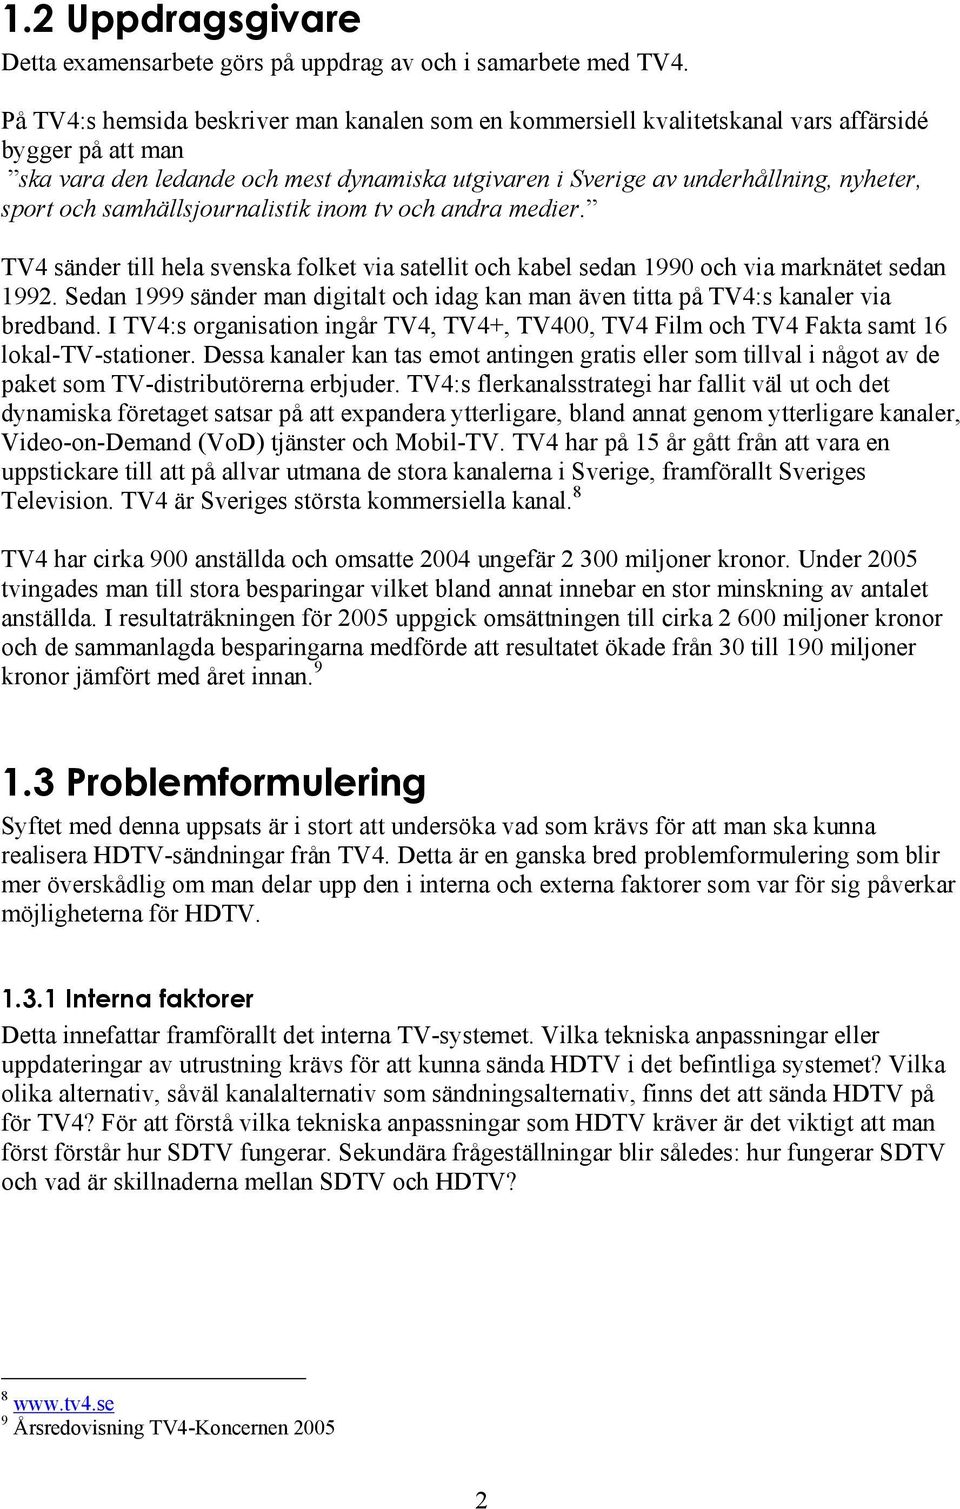 och samhällsjournalistik inom tv och andra medier. TV4 sänder till hela svenska folket via satellit och kabel sedan 1990 och via marknätet sedan 1992.